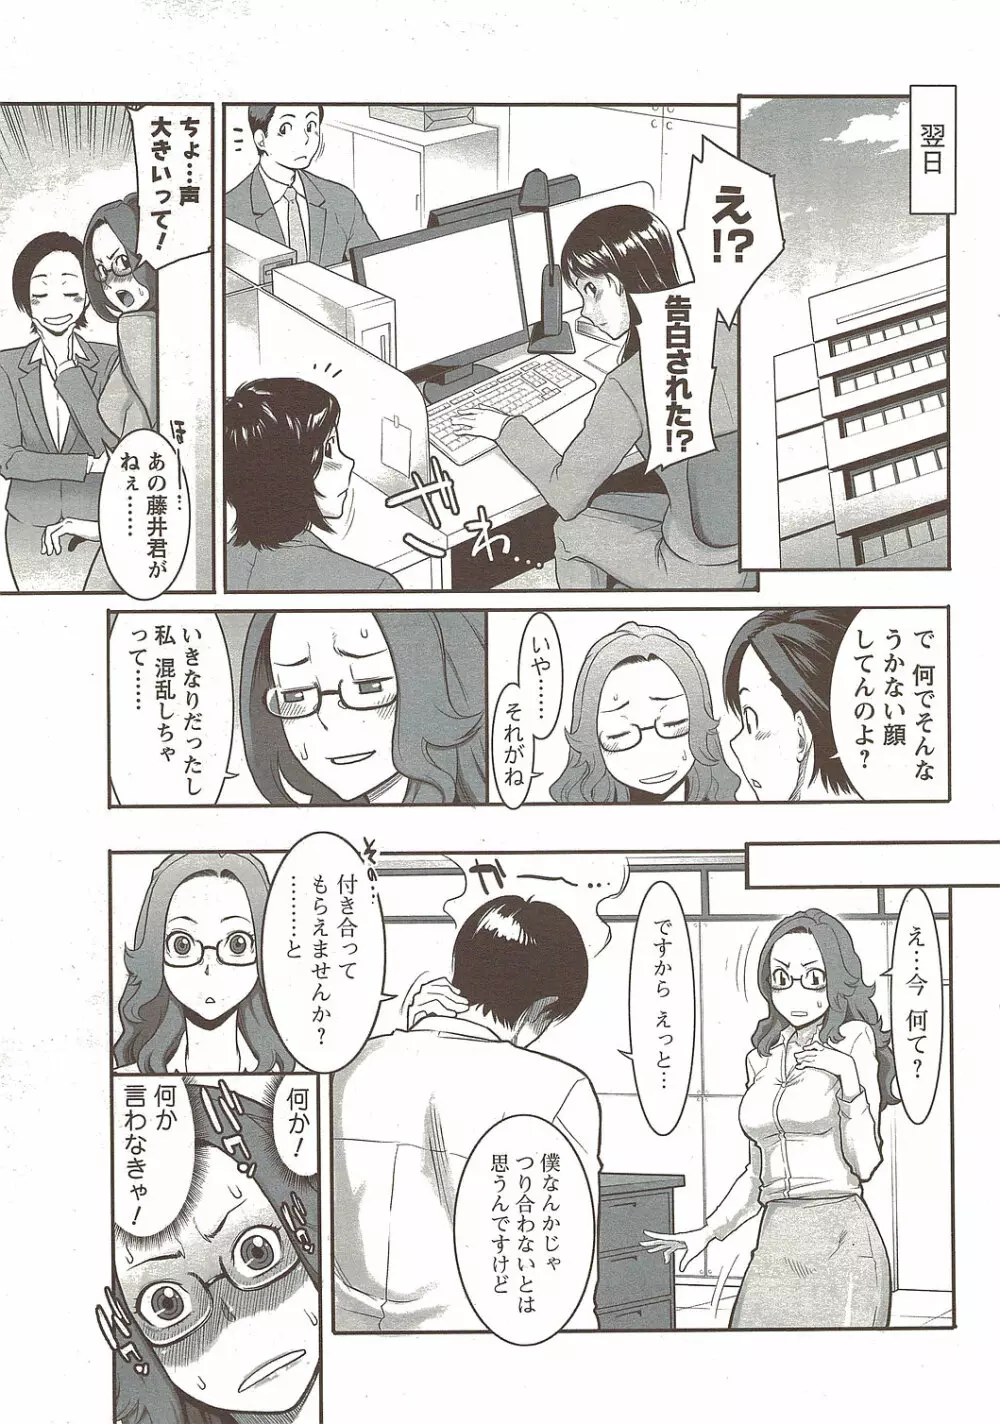 メンズヤングスペシャルIKAZUCHI雷 Vol.12 2009年12月号増刊 29ページ